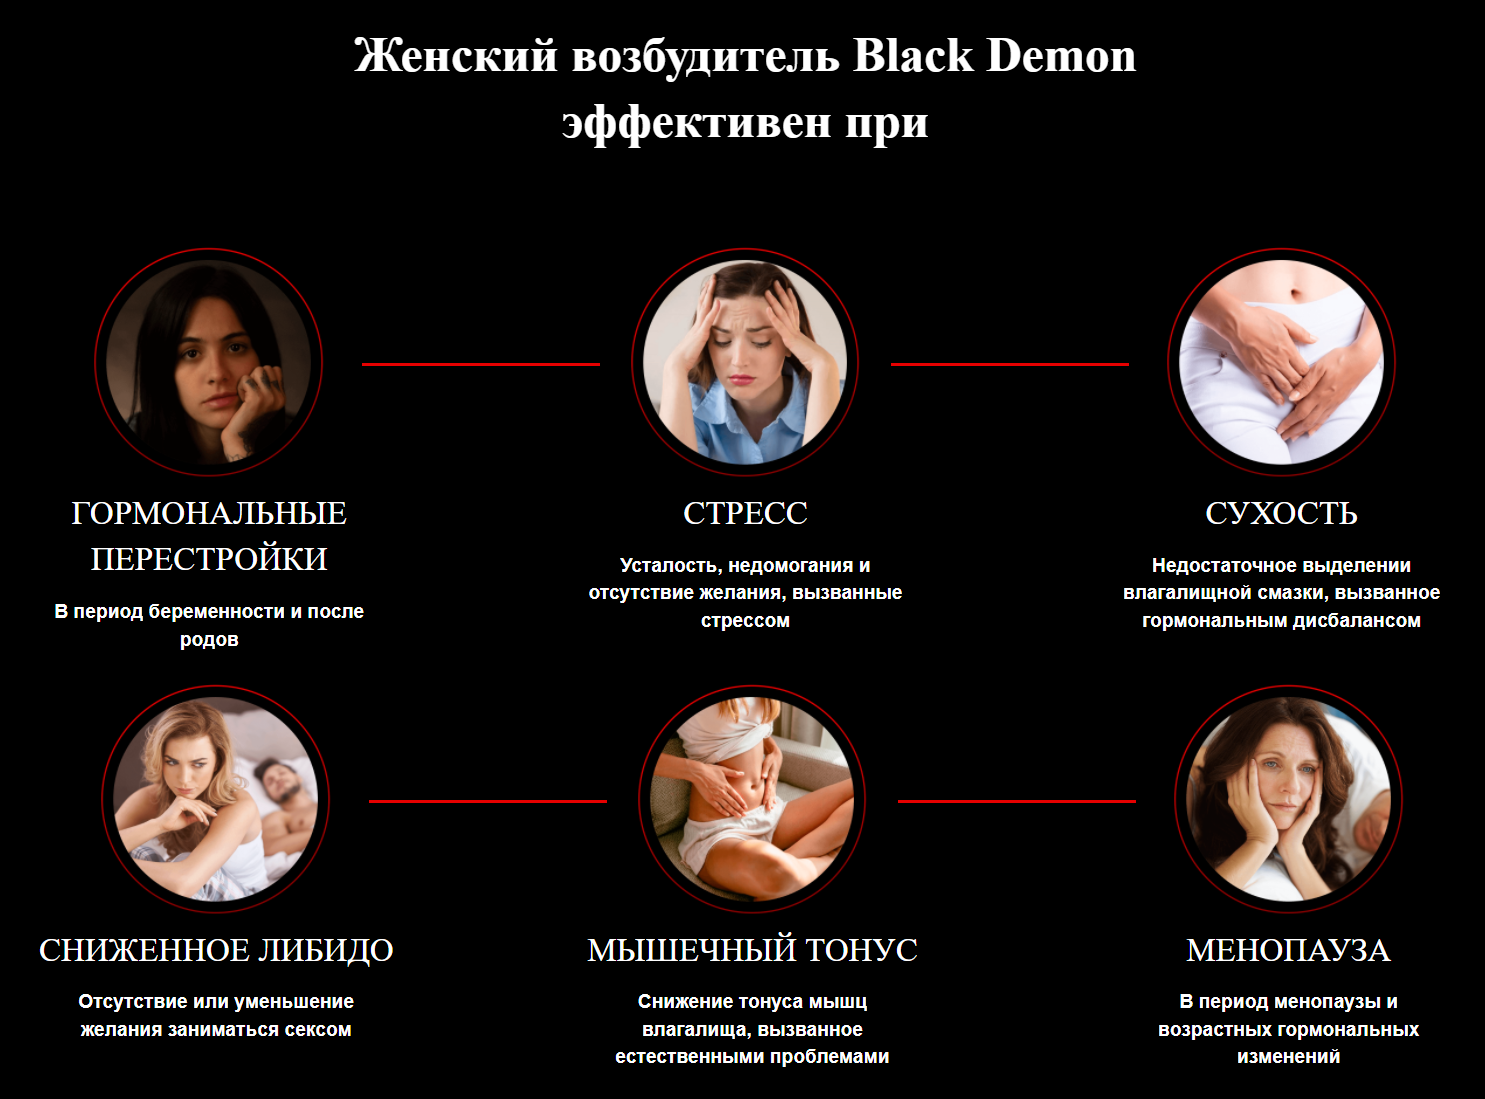 Показания к применению Black Demon